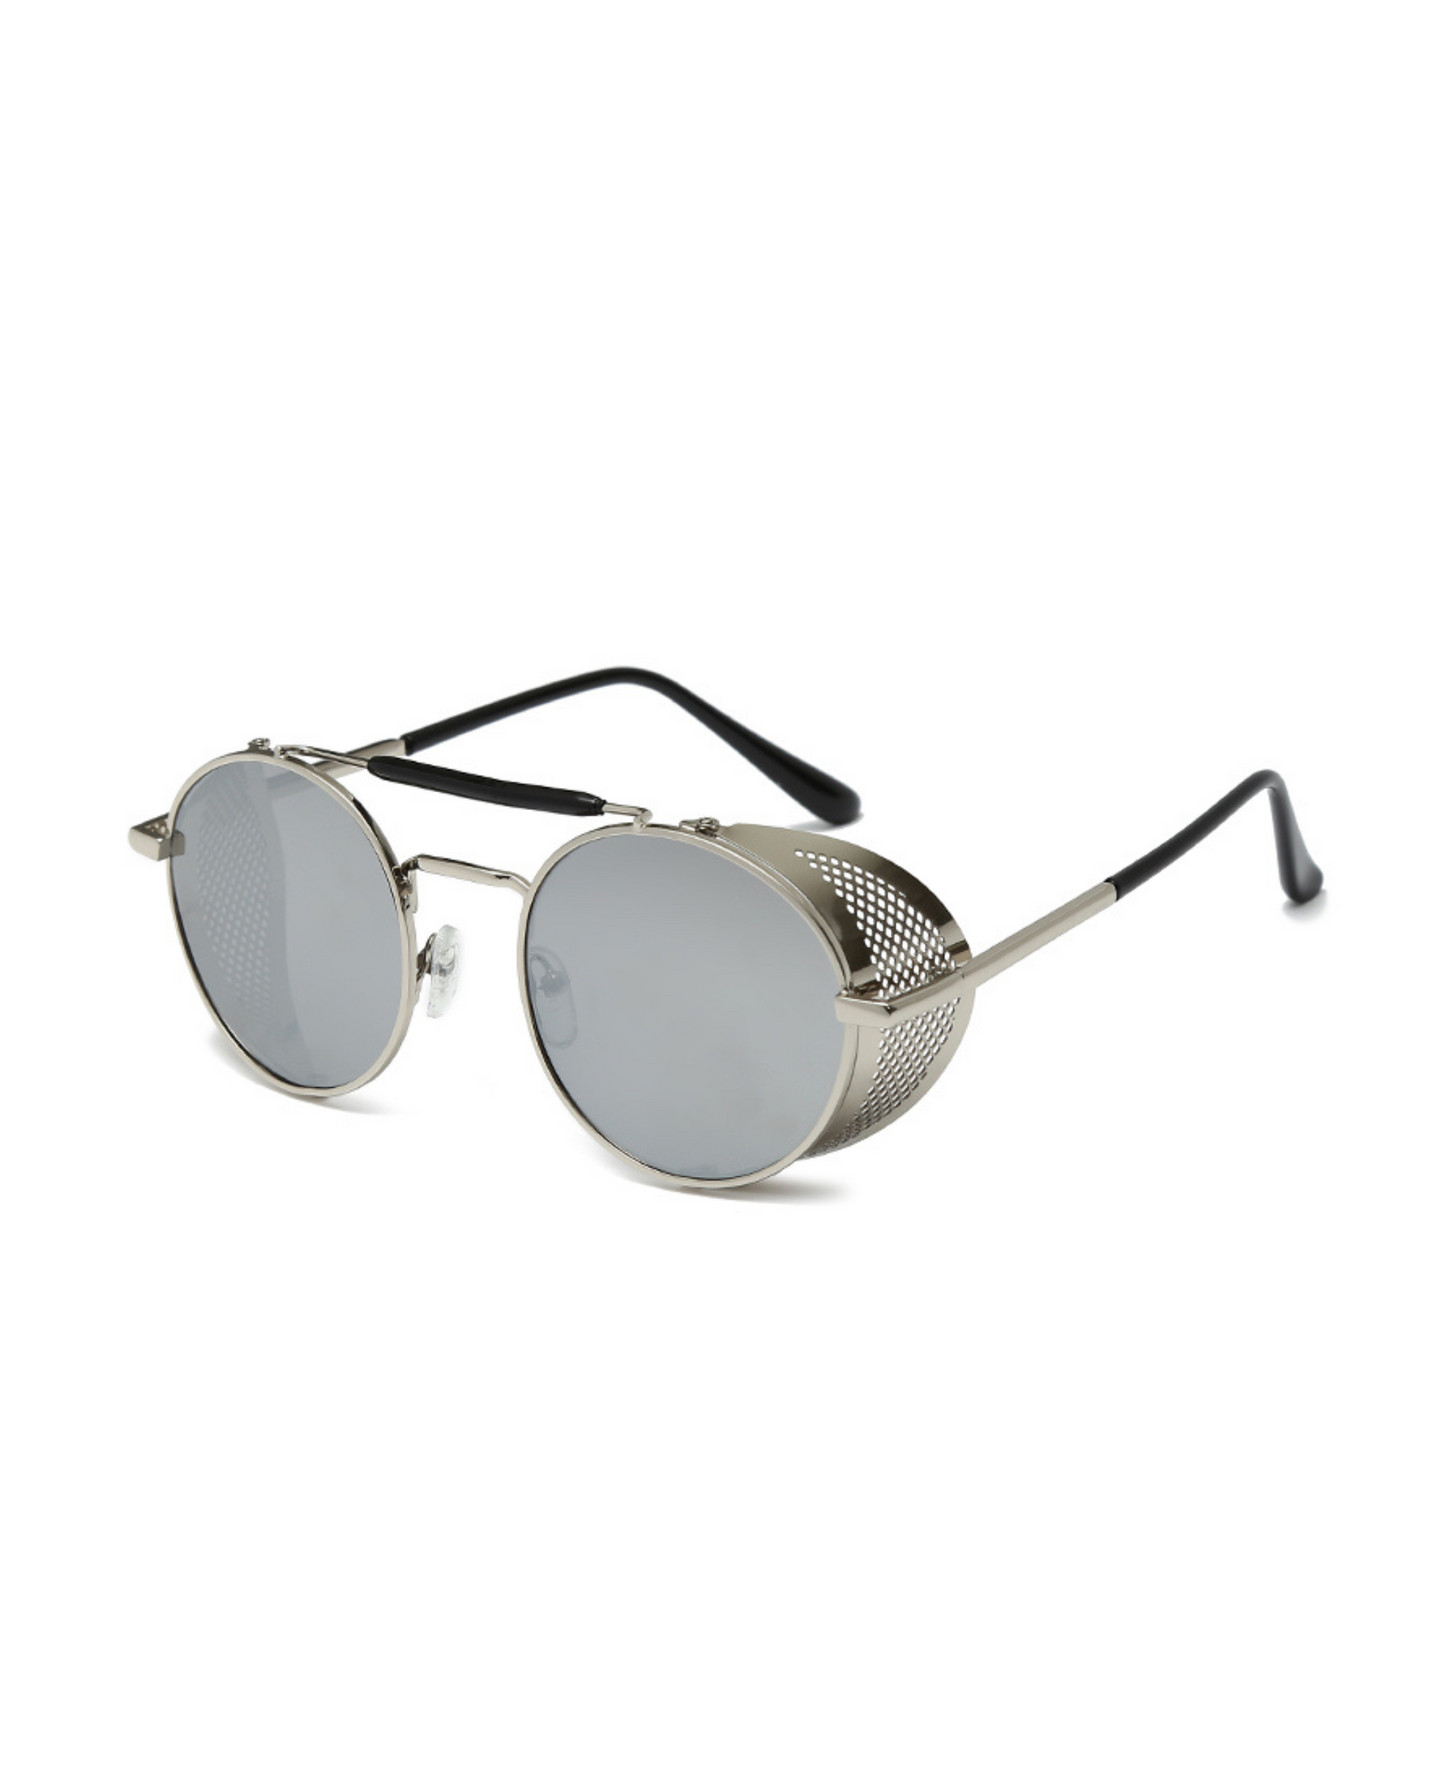 Silver Retro Round Glasses